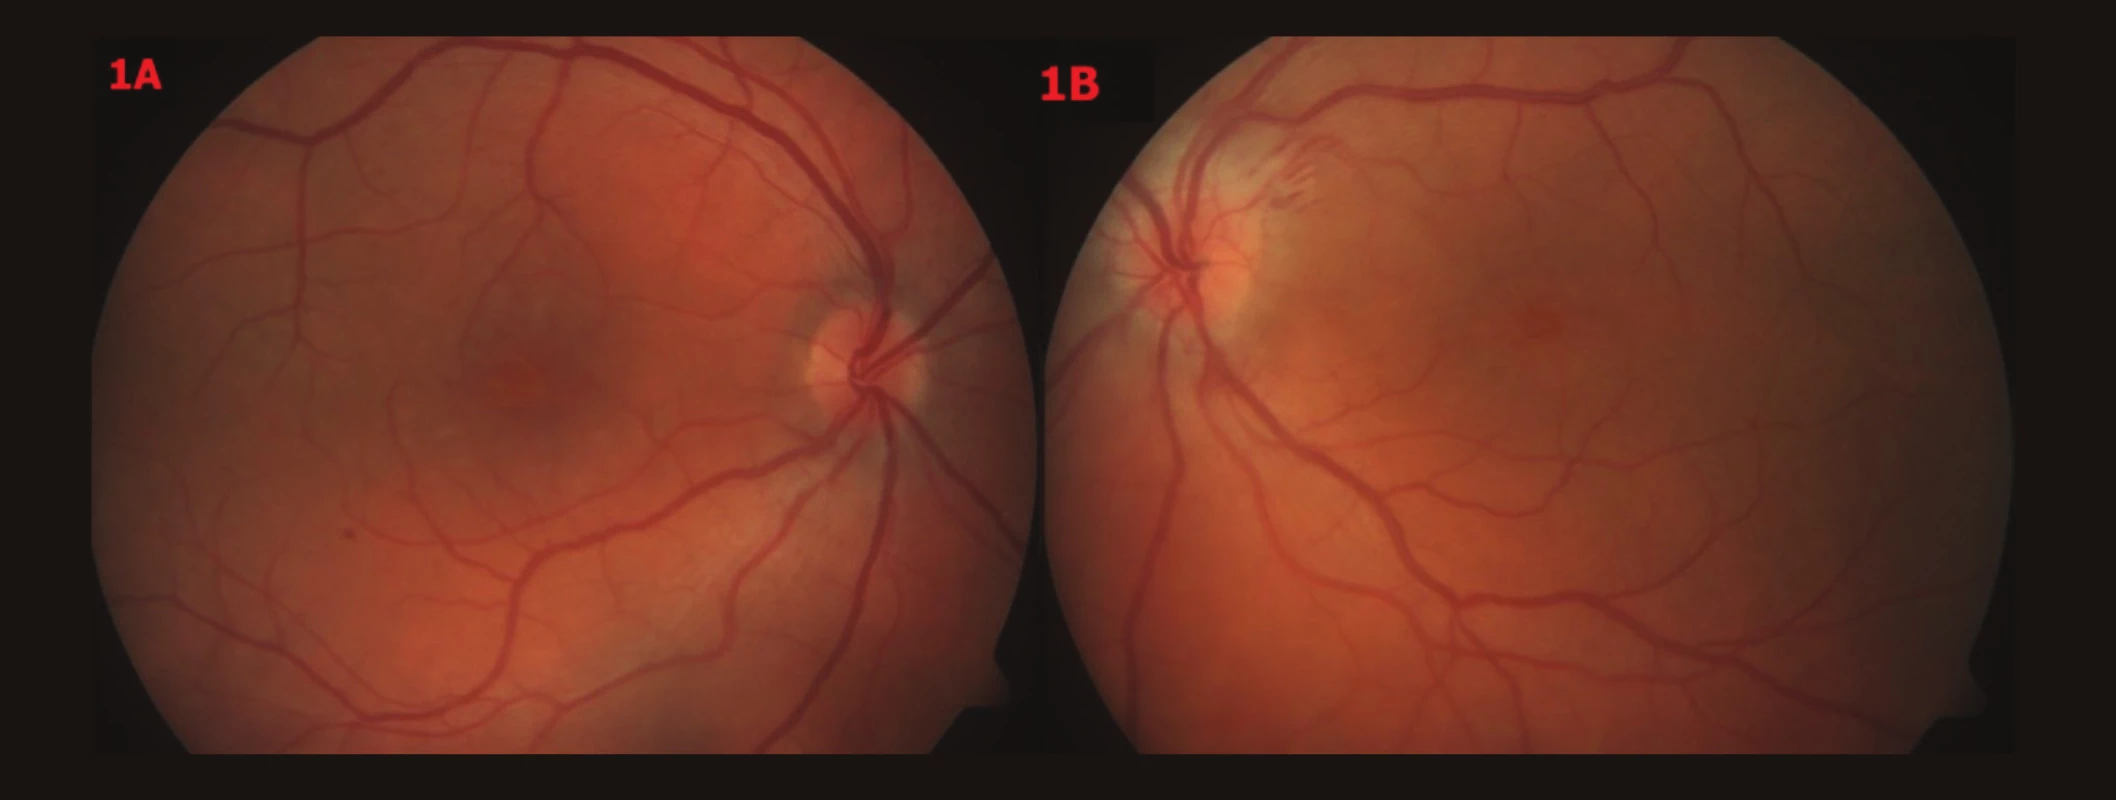 Barevné fotografické snímky fundu OPL – vstupní nález
1A – OP – papila okrouhlá, ohraničená, růžová, v centru CME,
1B – OL – papila neostře ohraničená, prosáklá, bledší než vpravo, lehce nad niveau, parapapilárně třískovité hemoragie u č. 2, v centru CME, oboustranně artérie užší, tvrdších reflexů, vény vinuté, dilatované, oboustranně ve střední periférii ojediněle tečkovité hemoragie